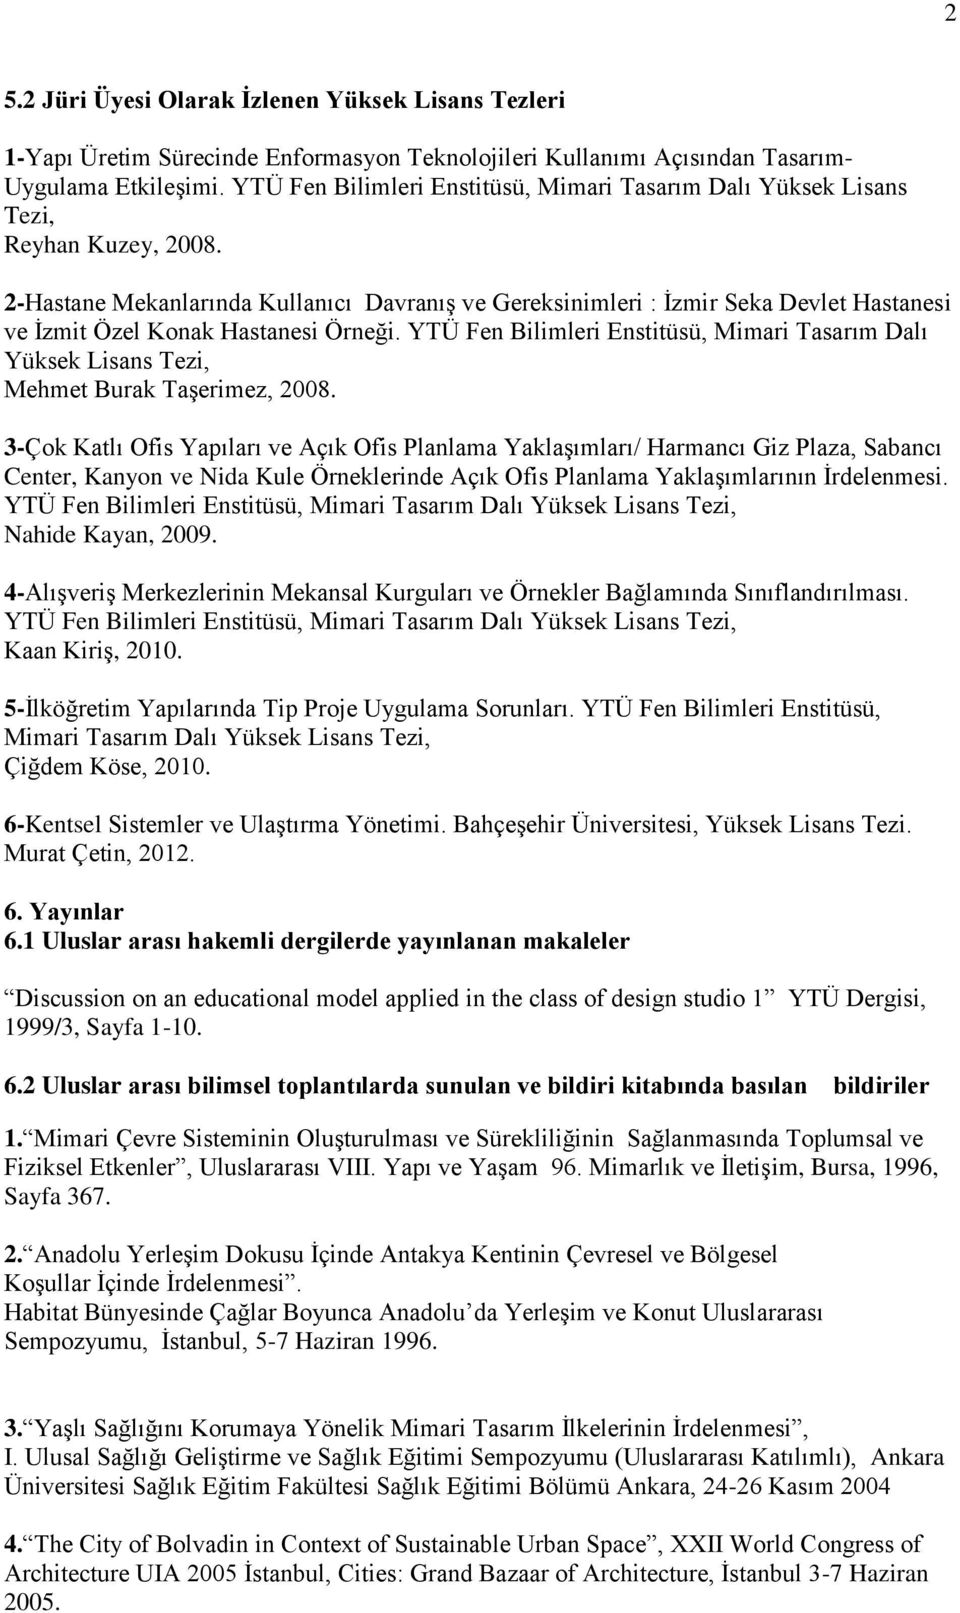 2-Hastane Mekanlarında Kullanıcı Davranış ve Gereksinimleri : İzmir Seka Devlet Hastanesi ve İzmit Özel Konak Hastanesi Örneği.